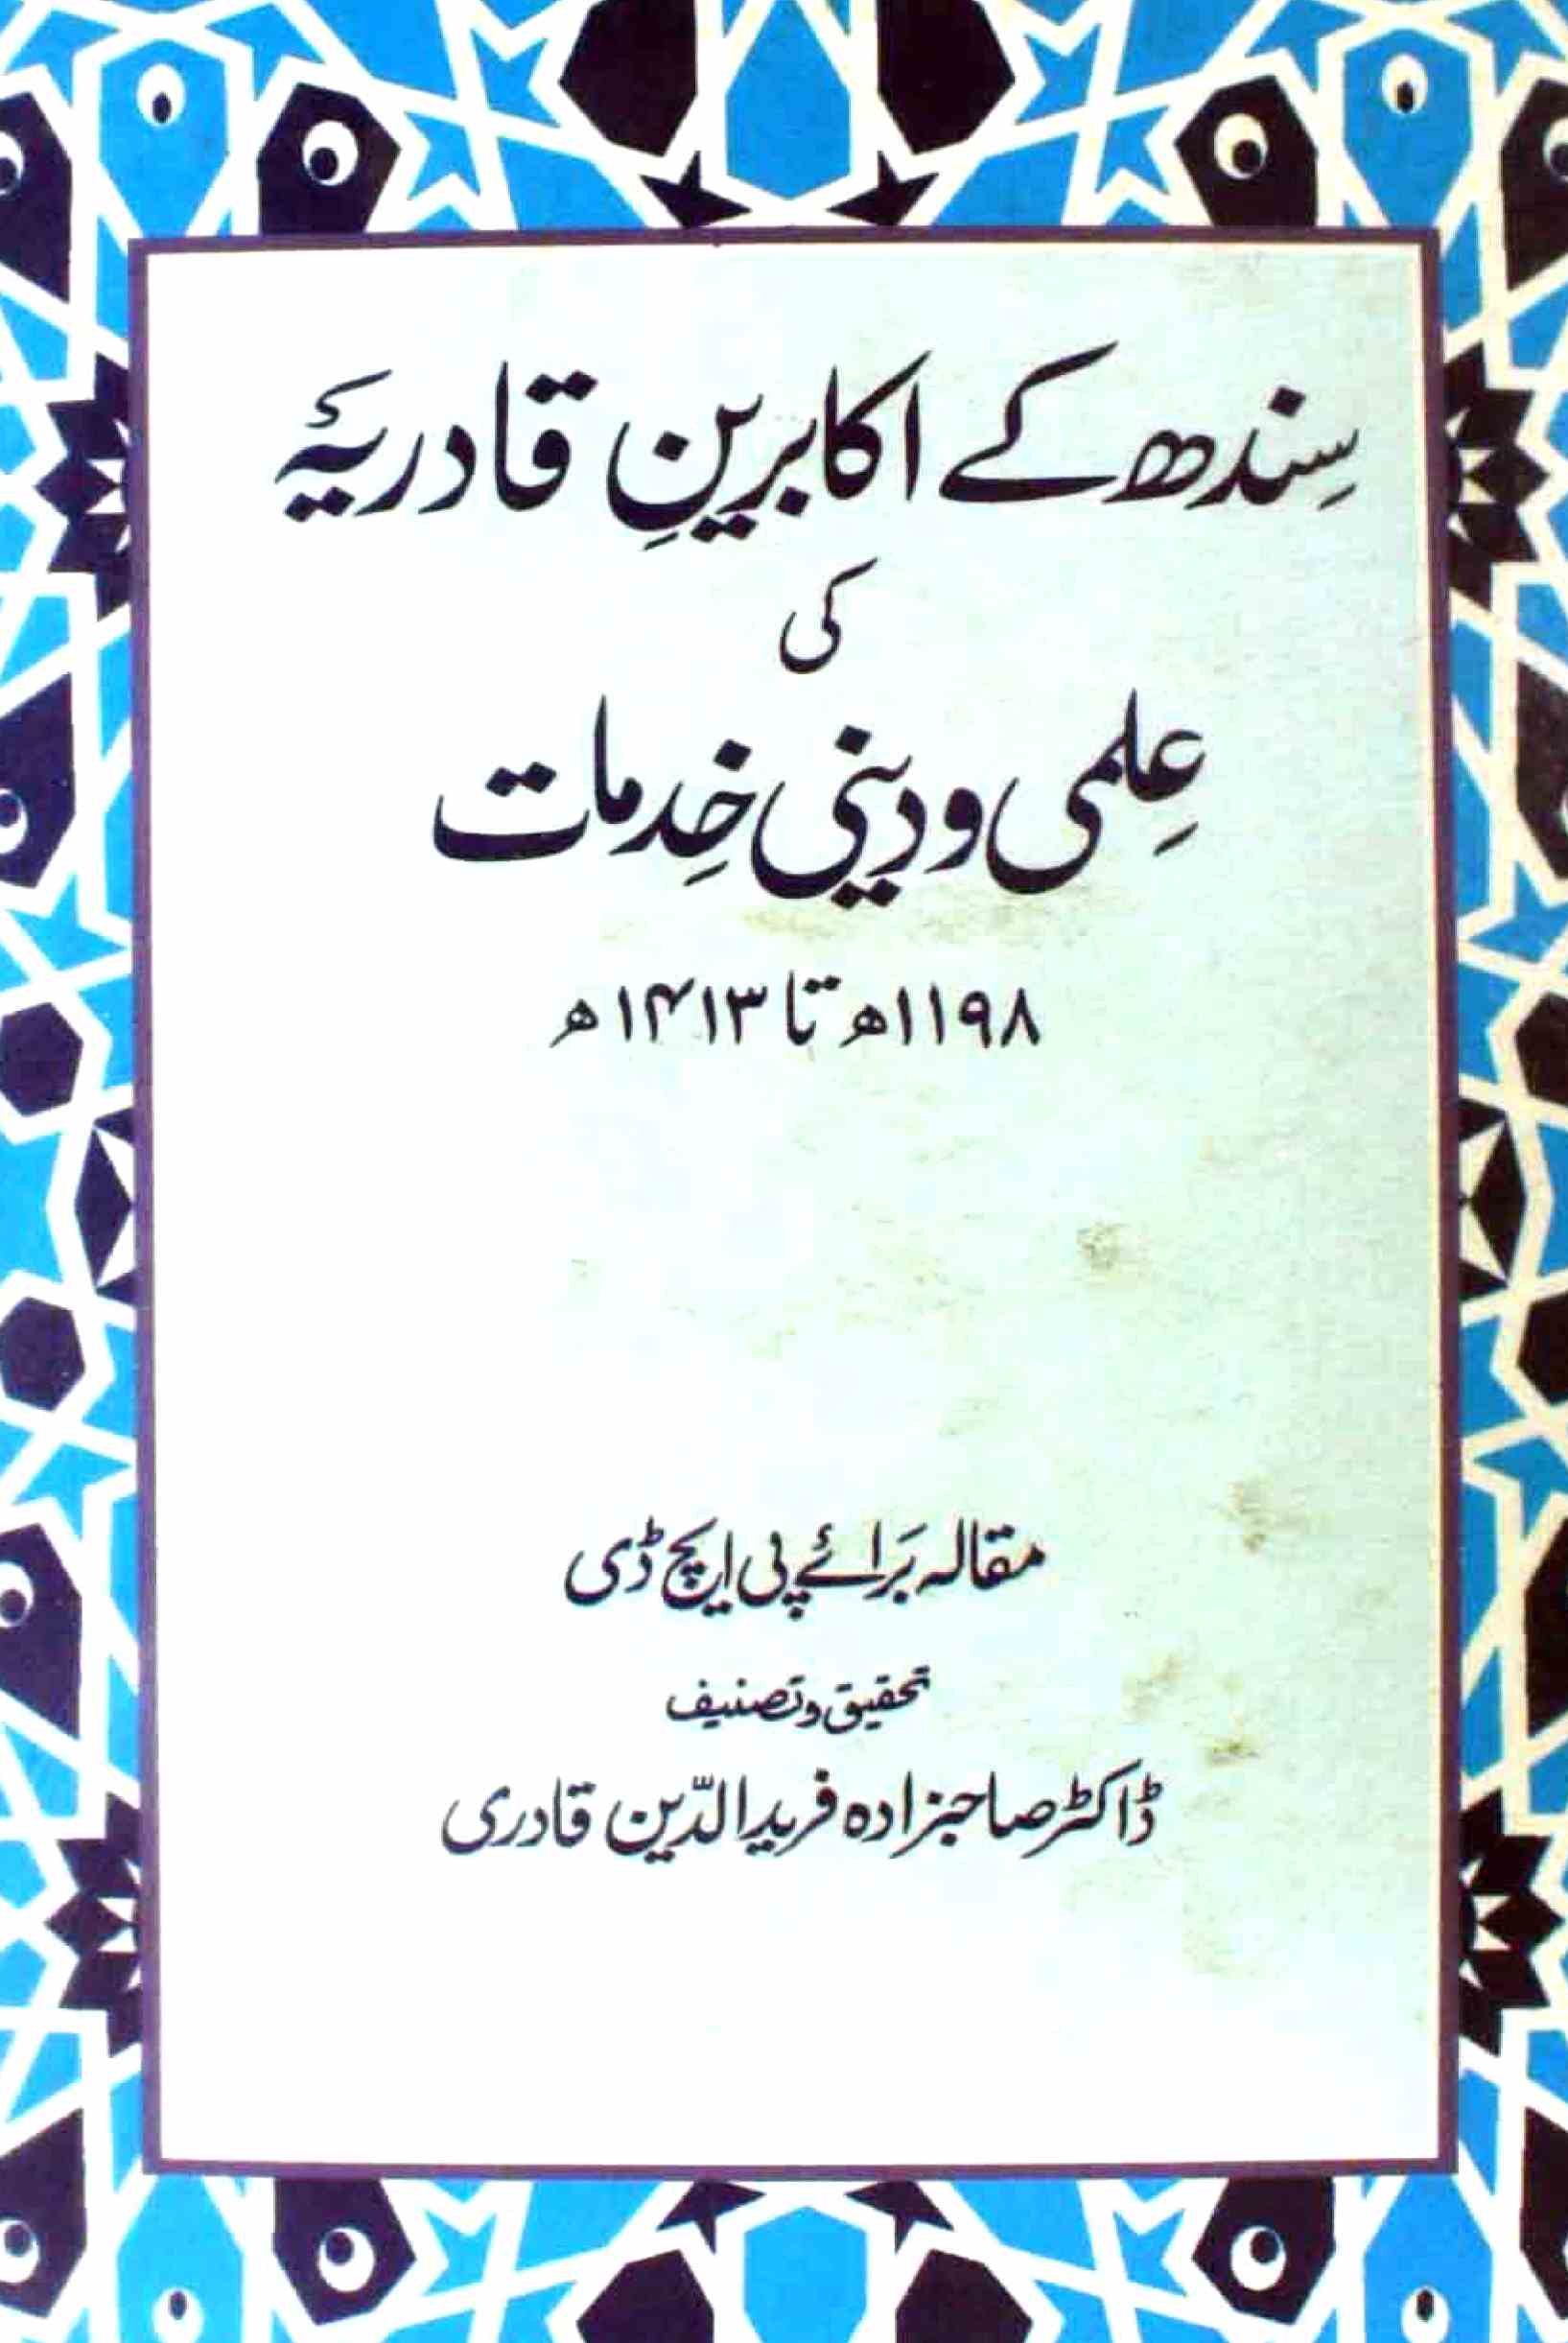 سندھ کے اکابرین قادریہ کی علمی و دینی خدمات